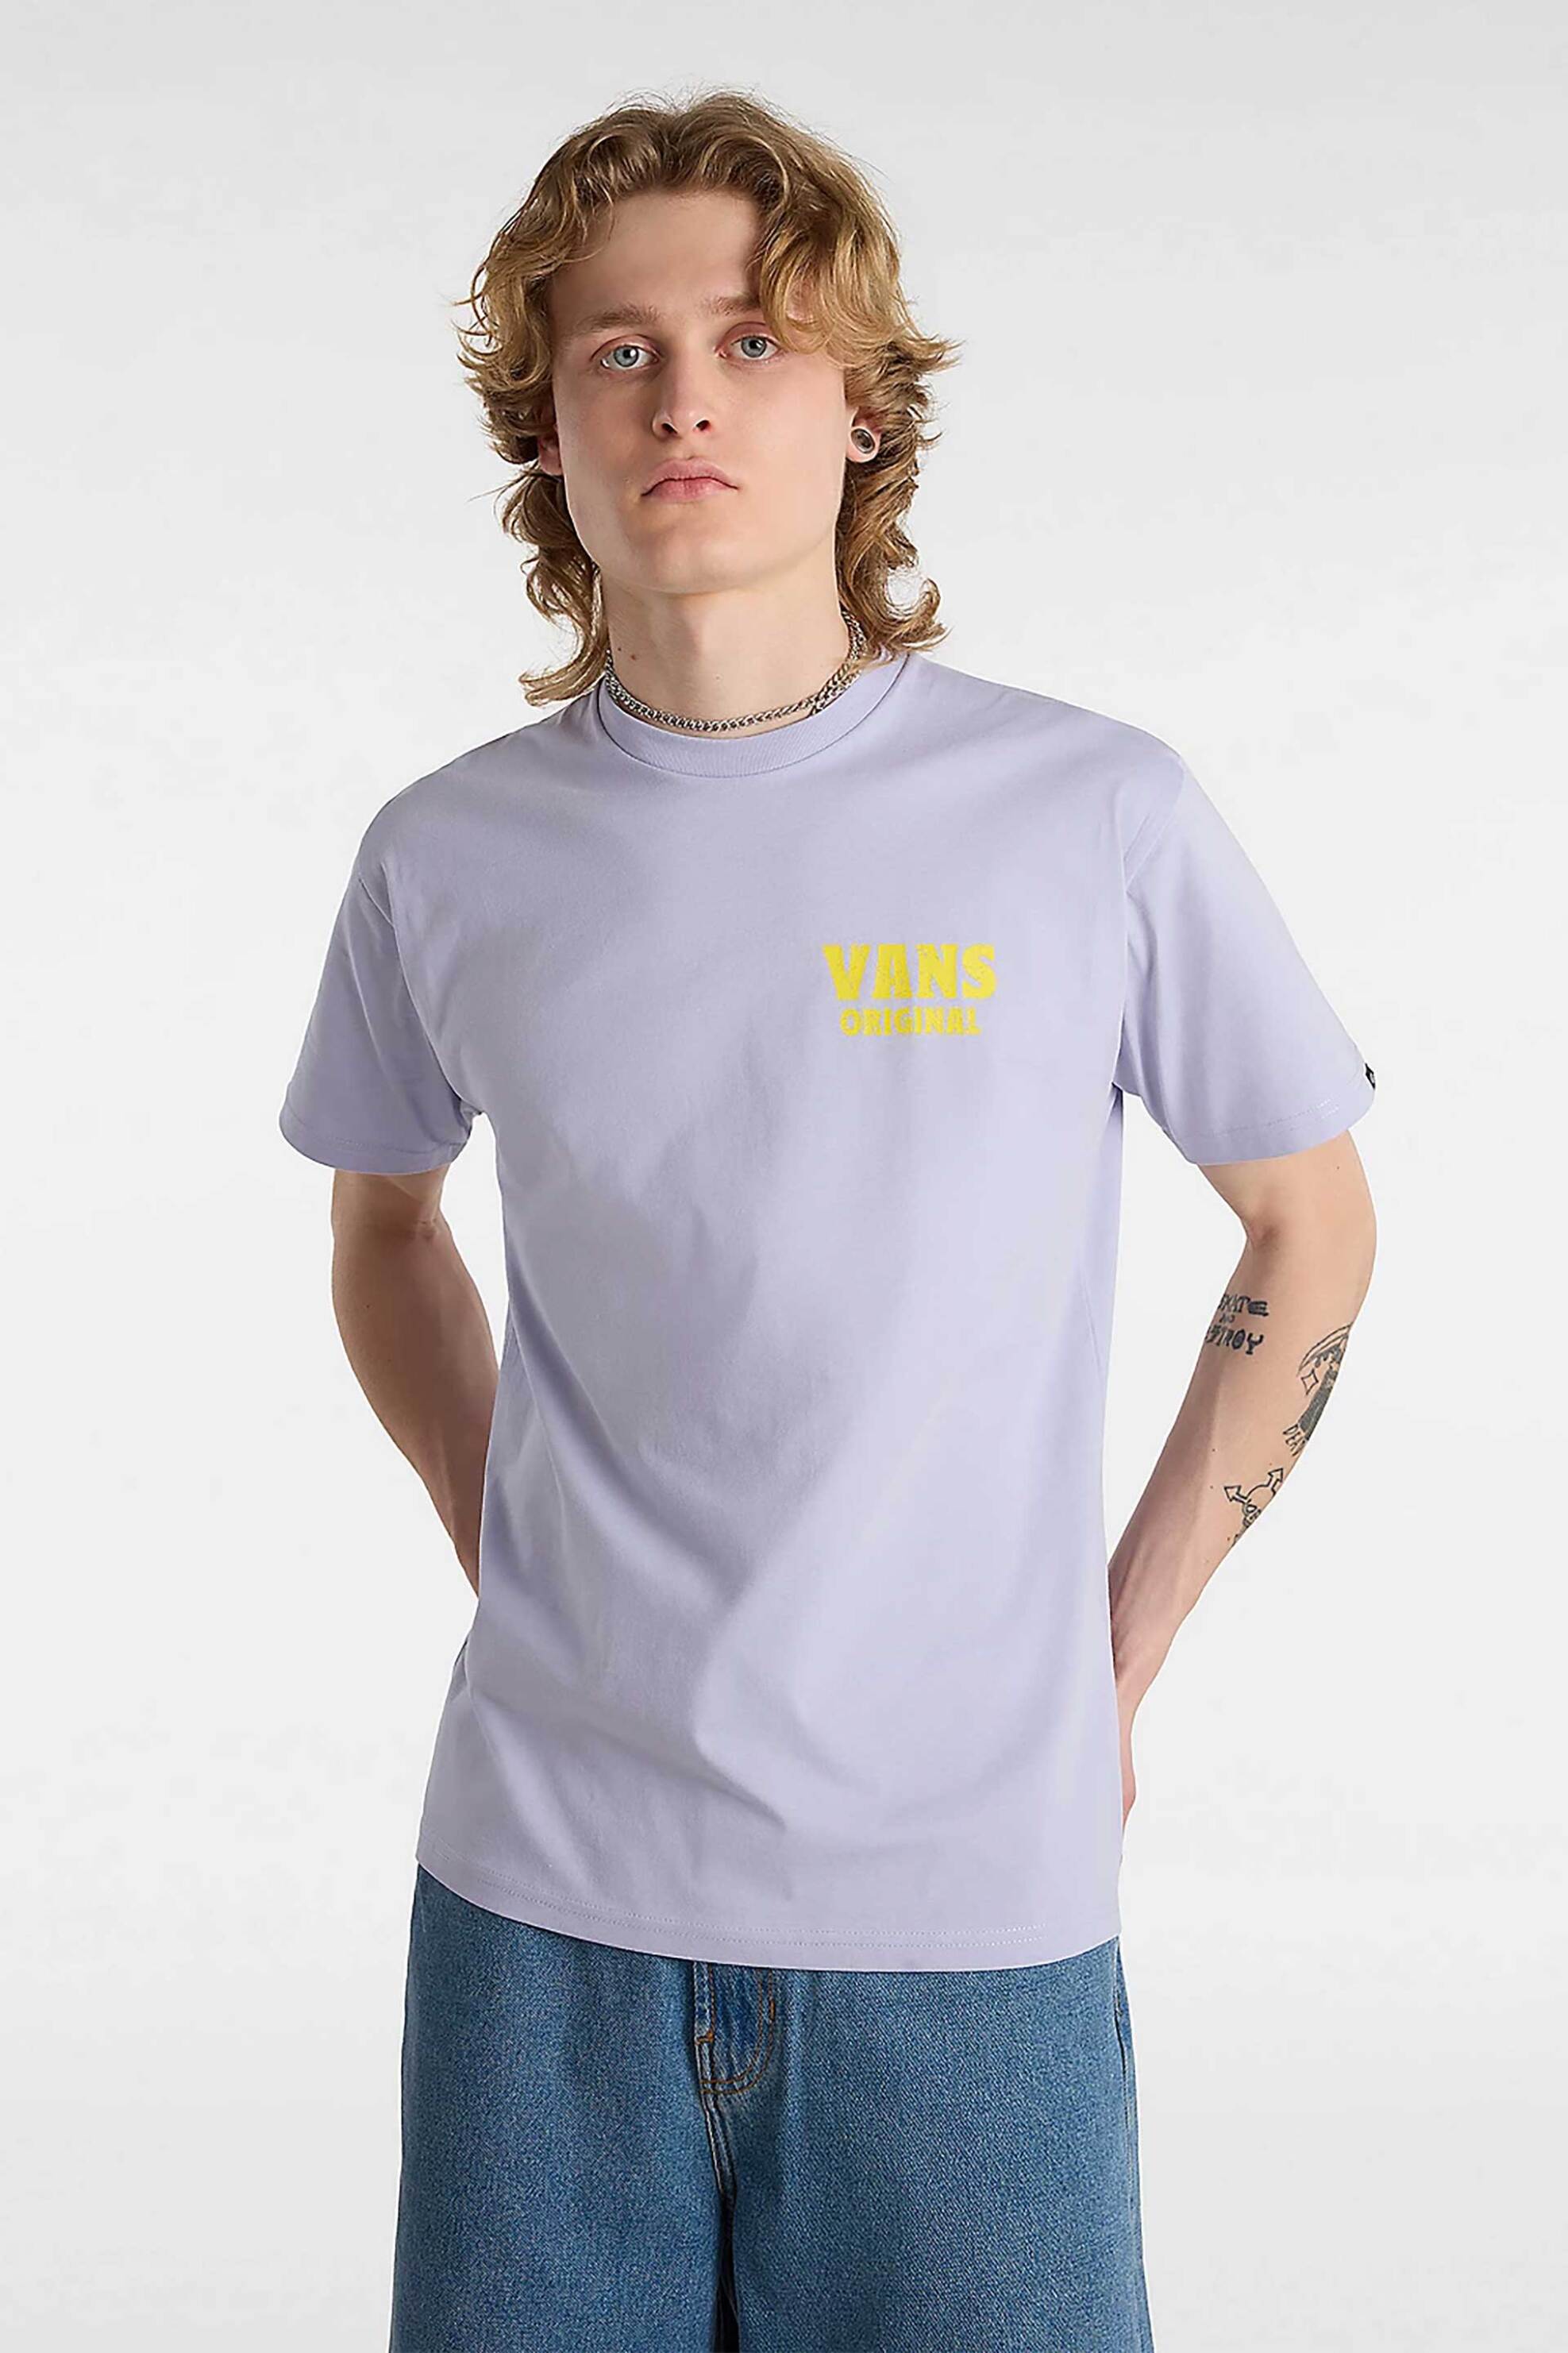 Ανδρική Μόδα > Ανδρικά Ρούχα > Ανδρικές Μπλούζες > Ανδρικά T-Shirts Vans ανδρικό T-shirt με print "Wave Cheers" - VN000KB8CR21 Λιλά